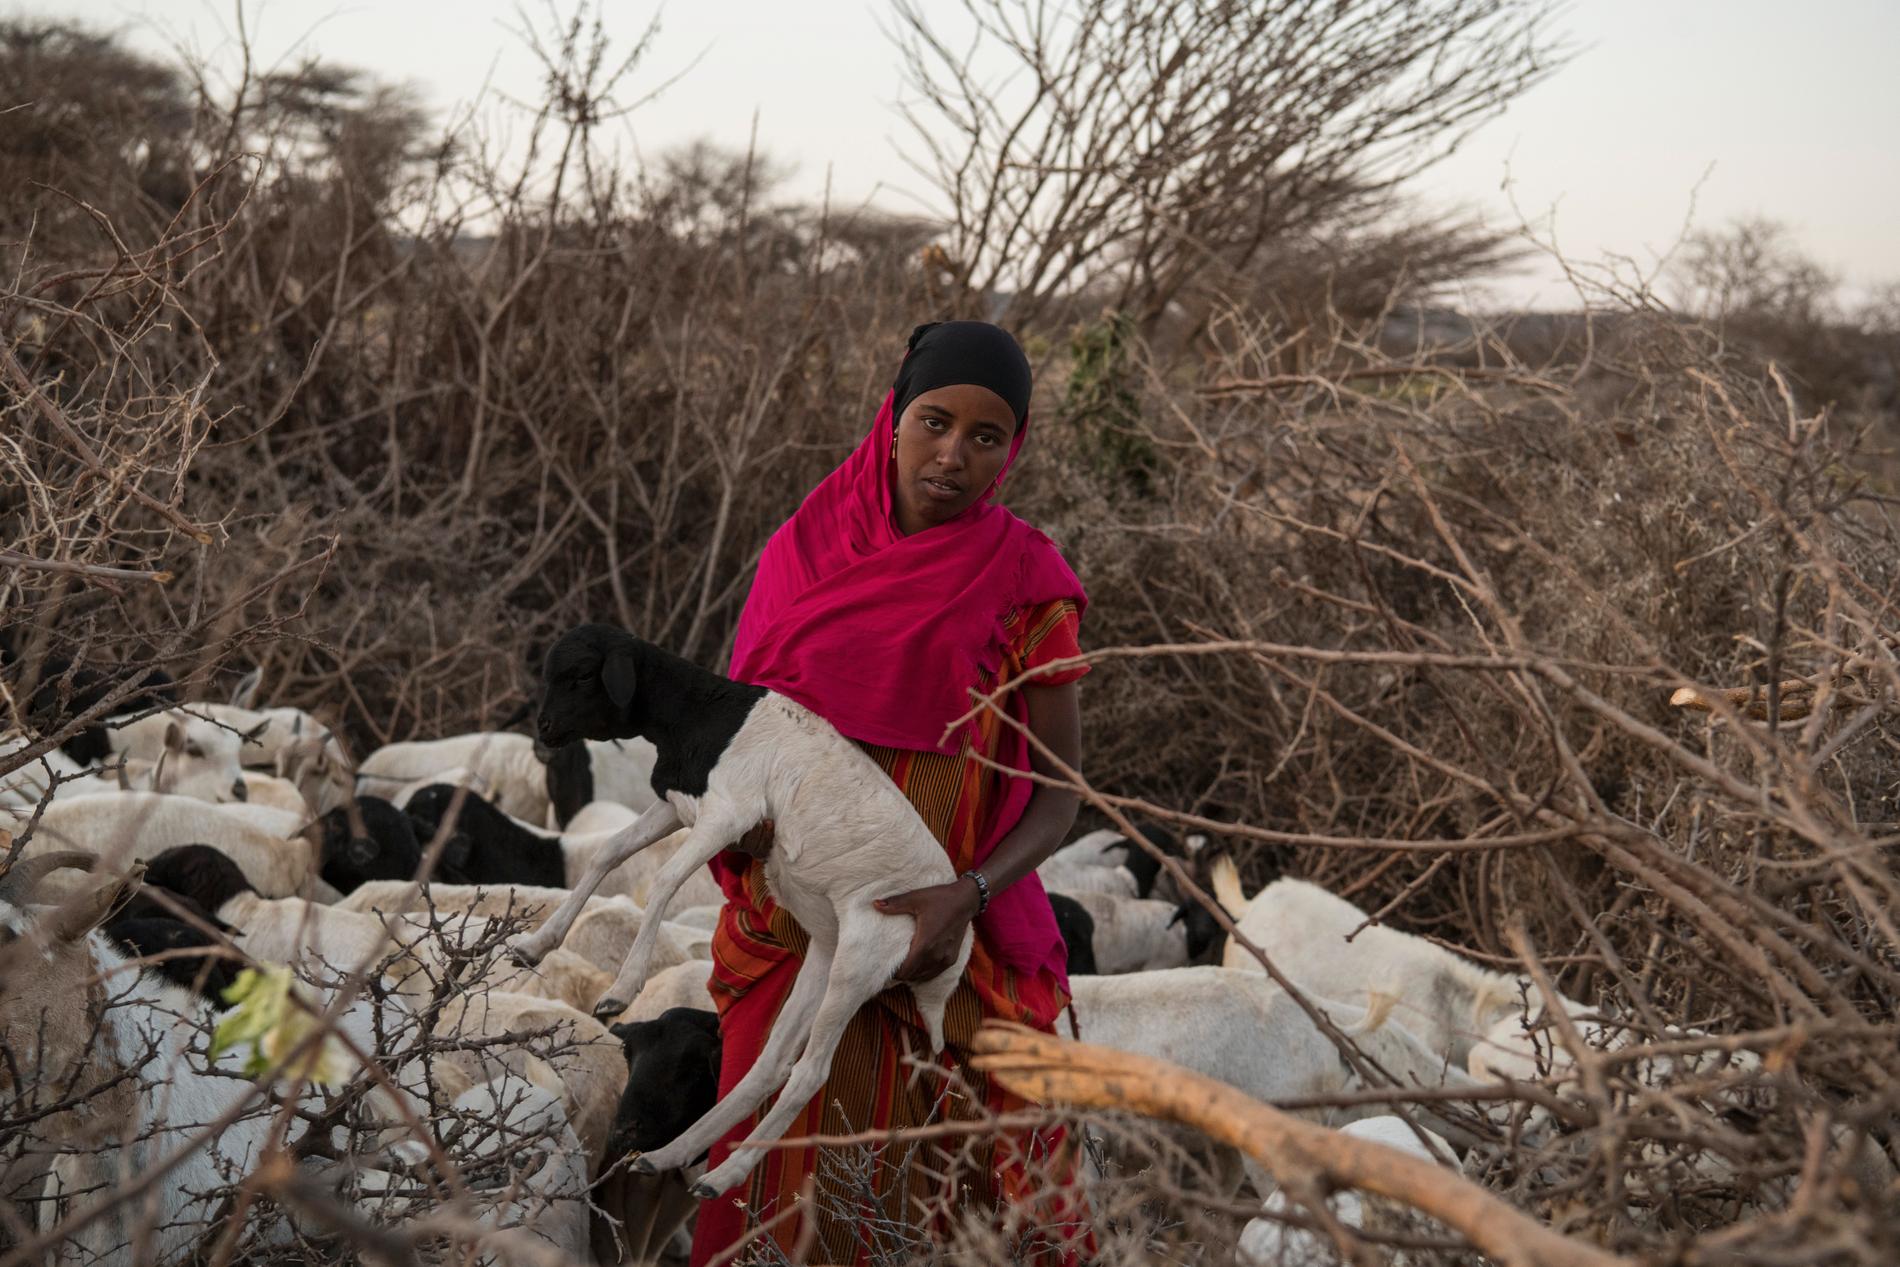 Sagal Khadar Mohamed bär ett av sina djur i famnen. Hon befinner sig i byn Elginiseed i Somaliland, dit hon flytt till följd av torkan. Omkring 13 miljoner människor på Afrikas horn står inför en svår hungerkris, enligt FN.